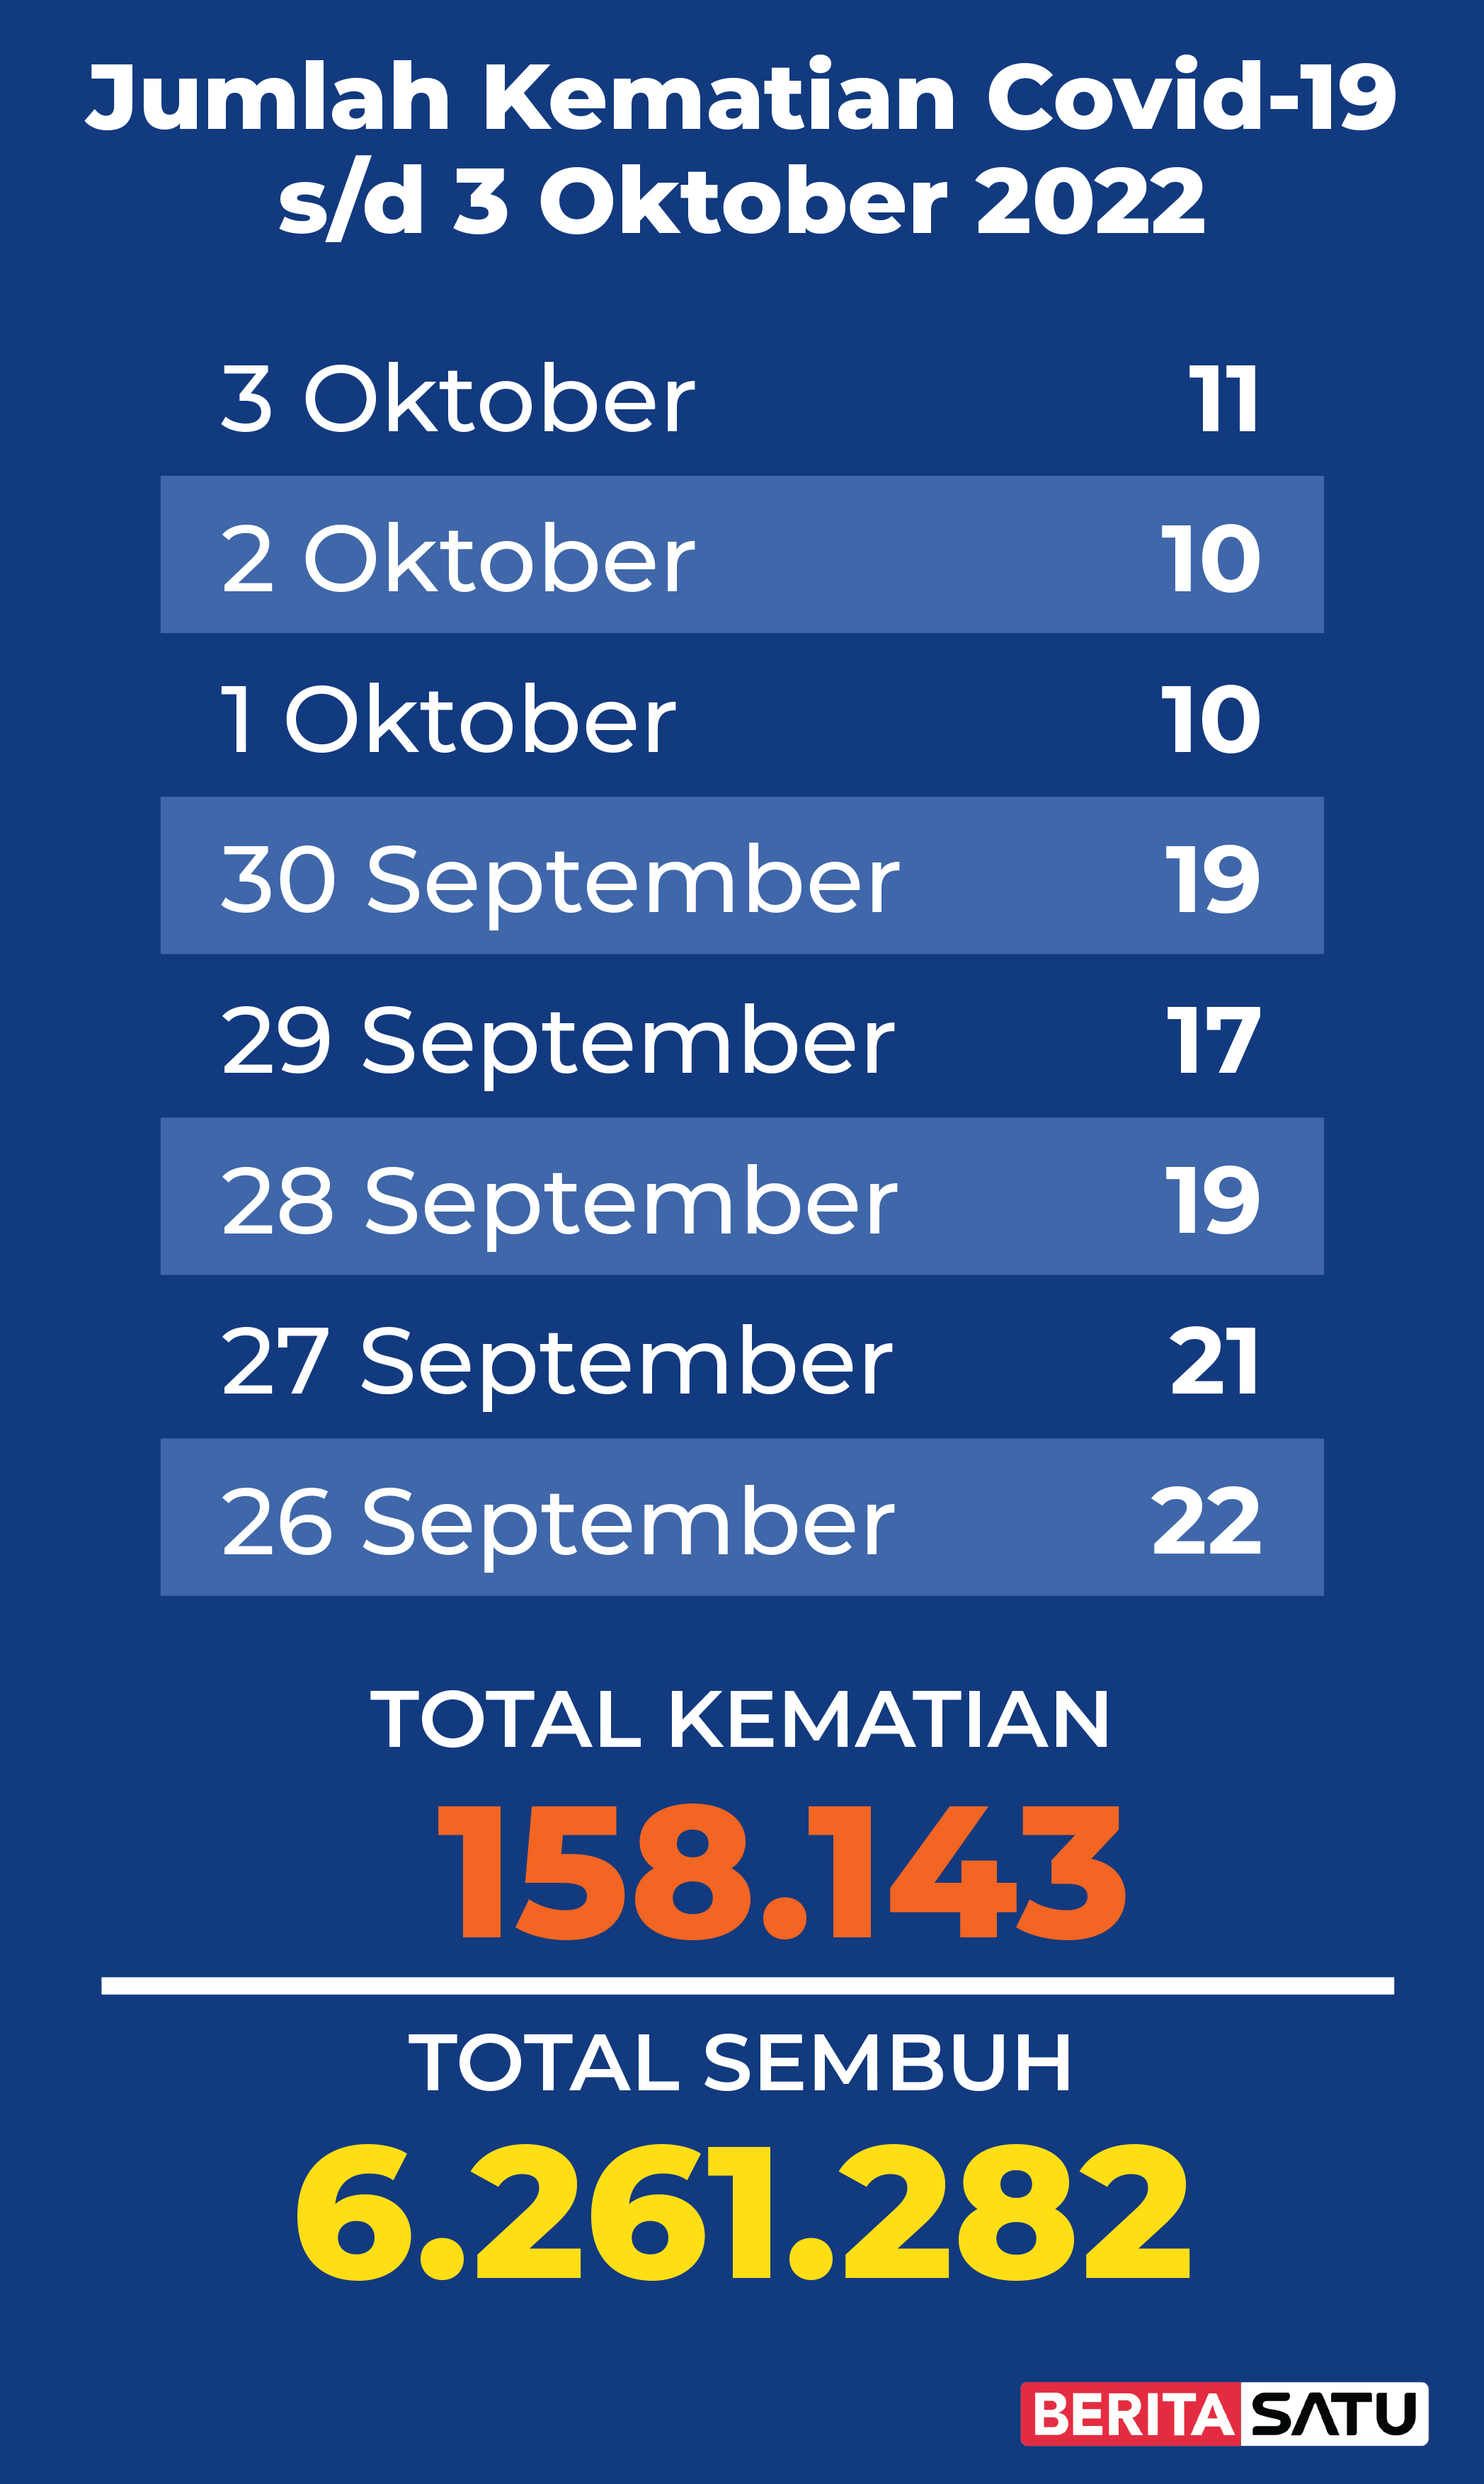 Data Kematian Covid-19 di Indonesia sampai 3 Oktober 2022